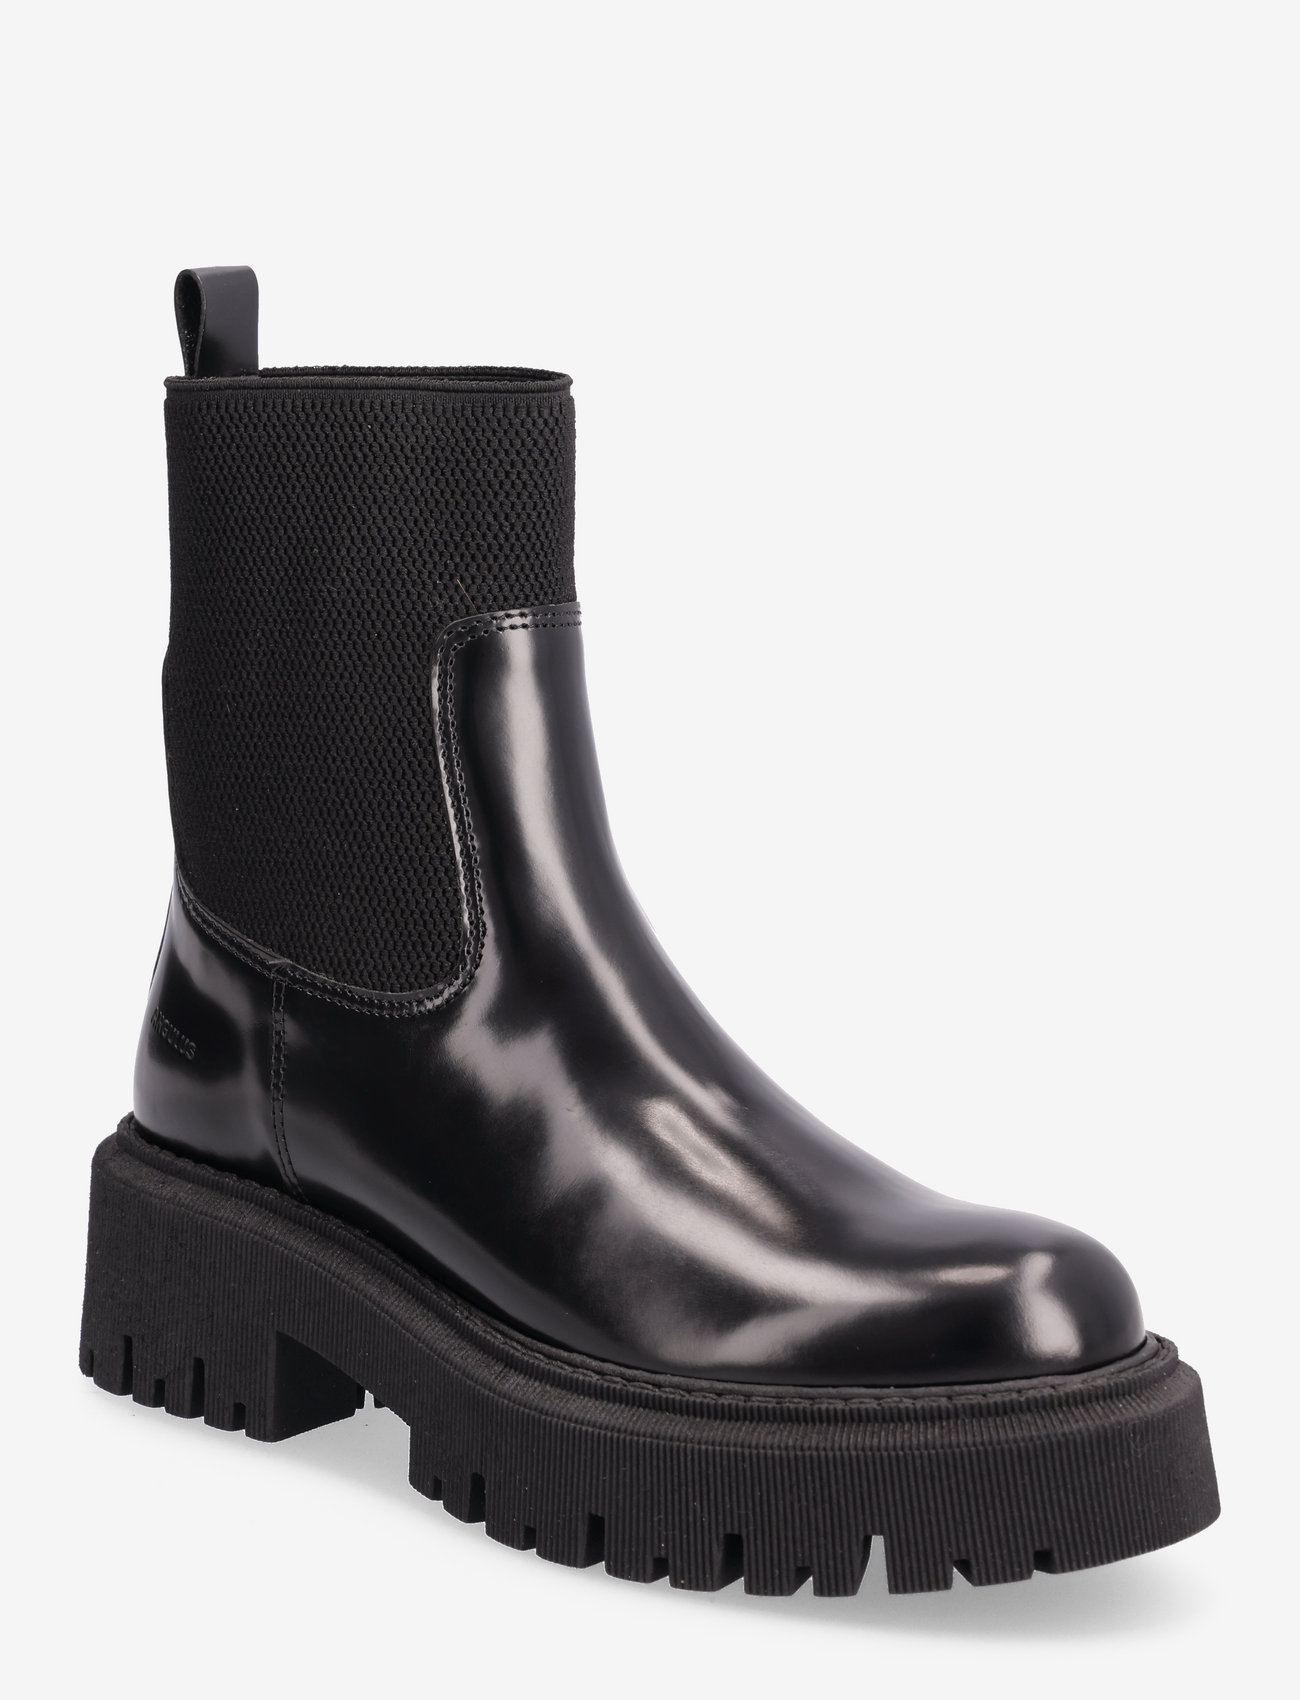 ANGULUS - Boots - flat - flade ankelstøvler - 1425/053 black/black - 0